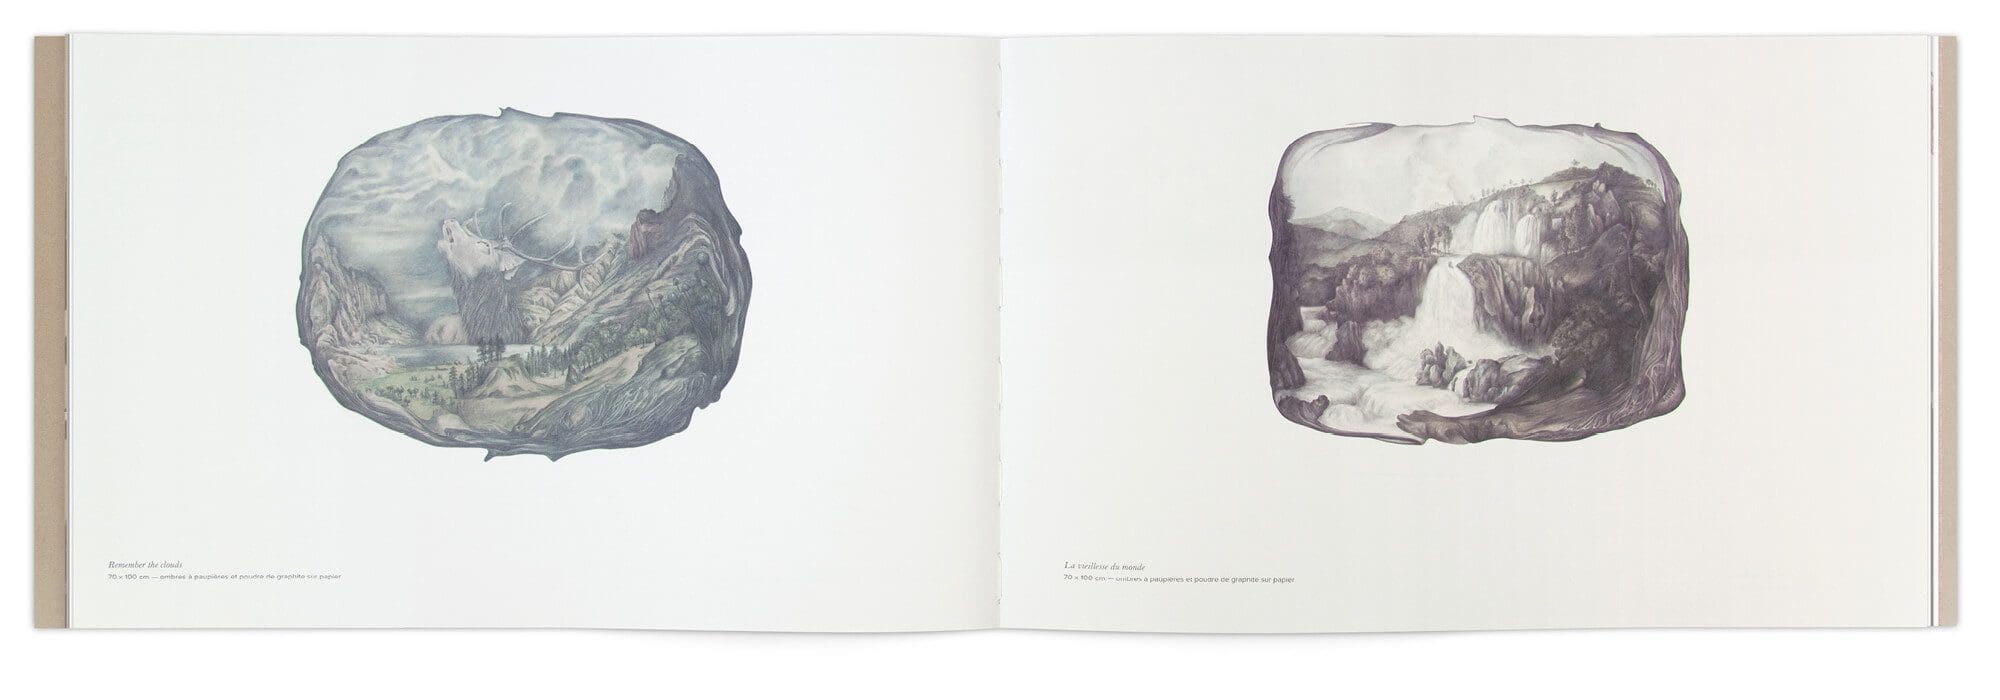 Double page du livre d'artiste d'Hélène Muheim, design graphique IchetKar